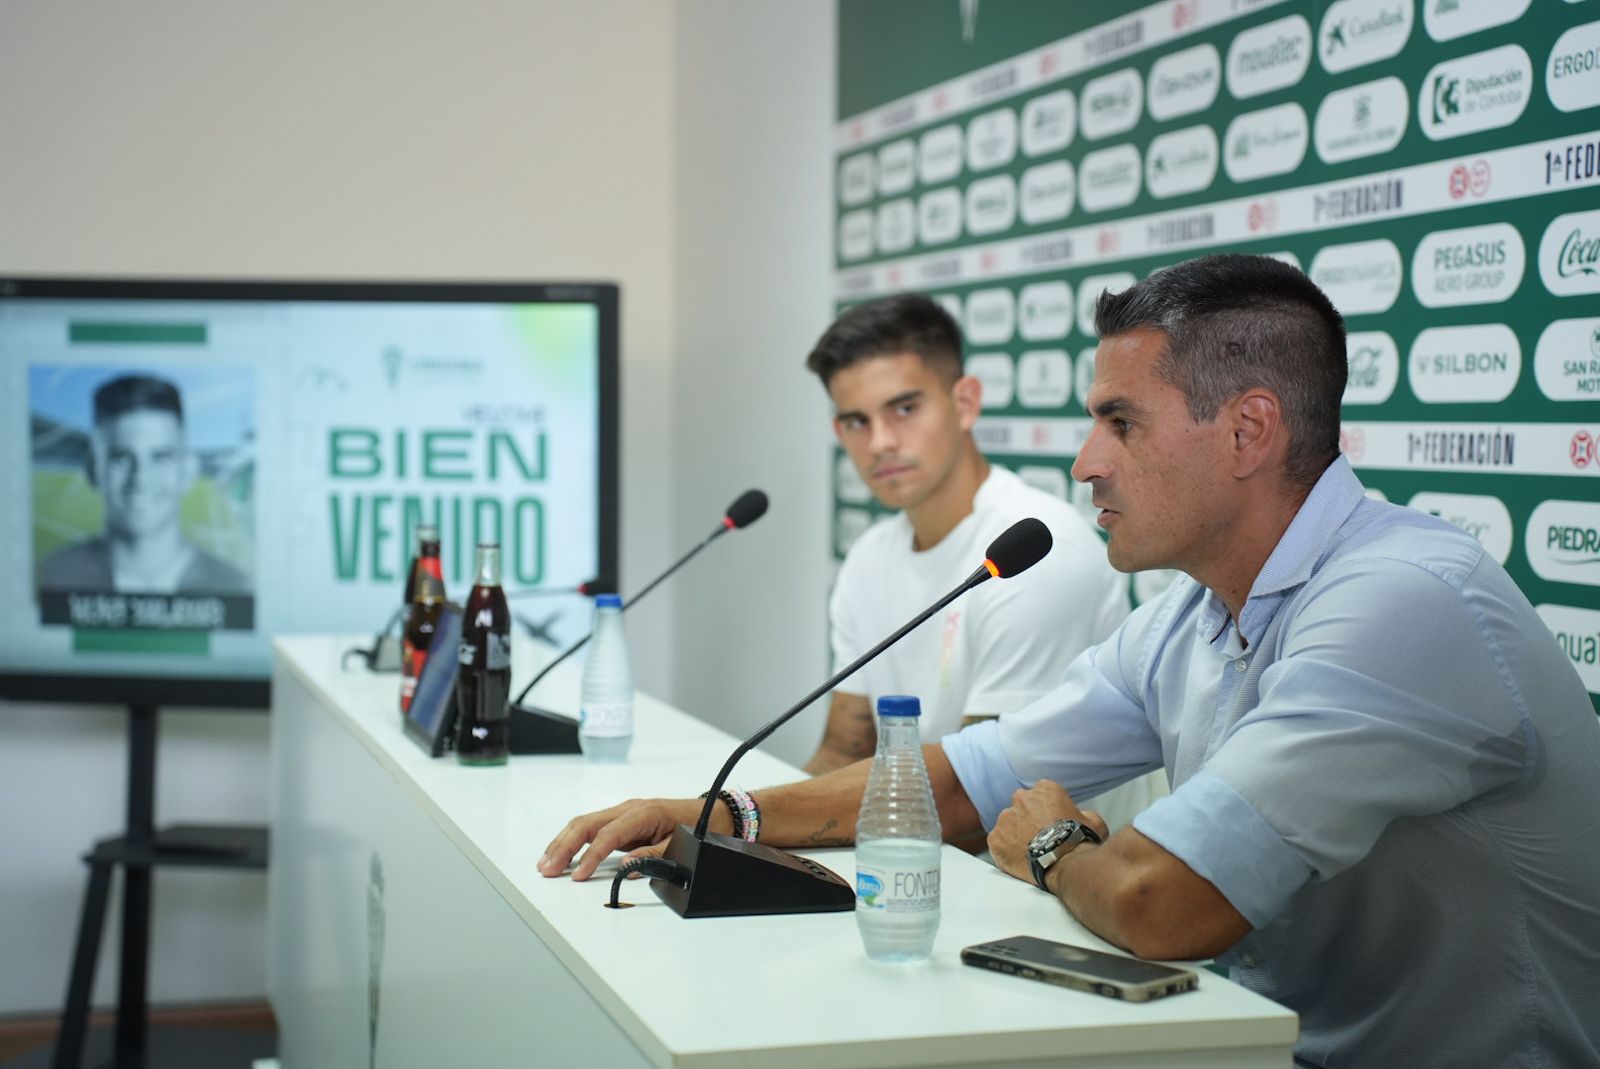 La presentación de Kuki Salazar, último fichaje del Córdoba CF, en imágenes